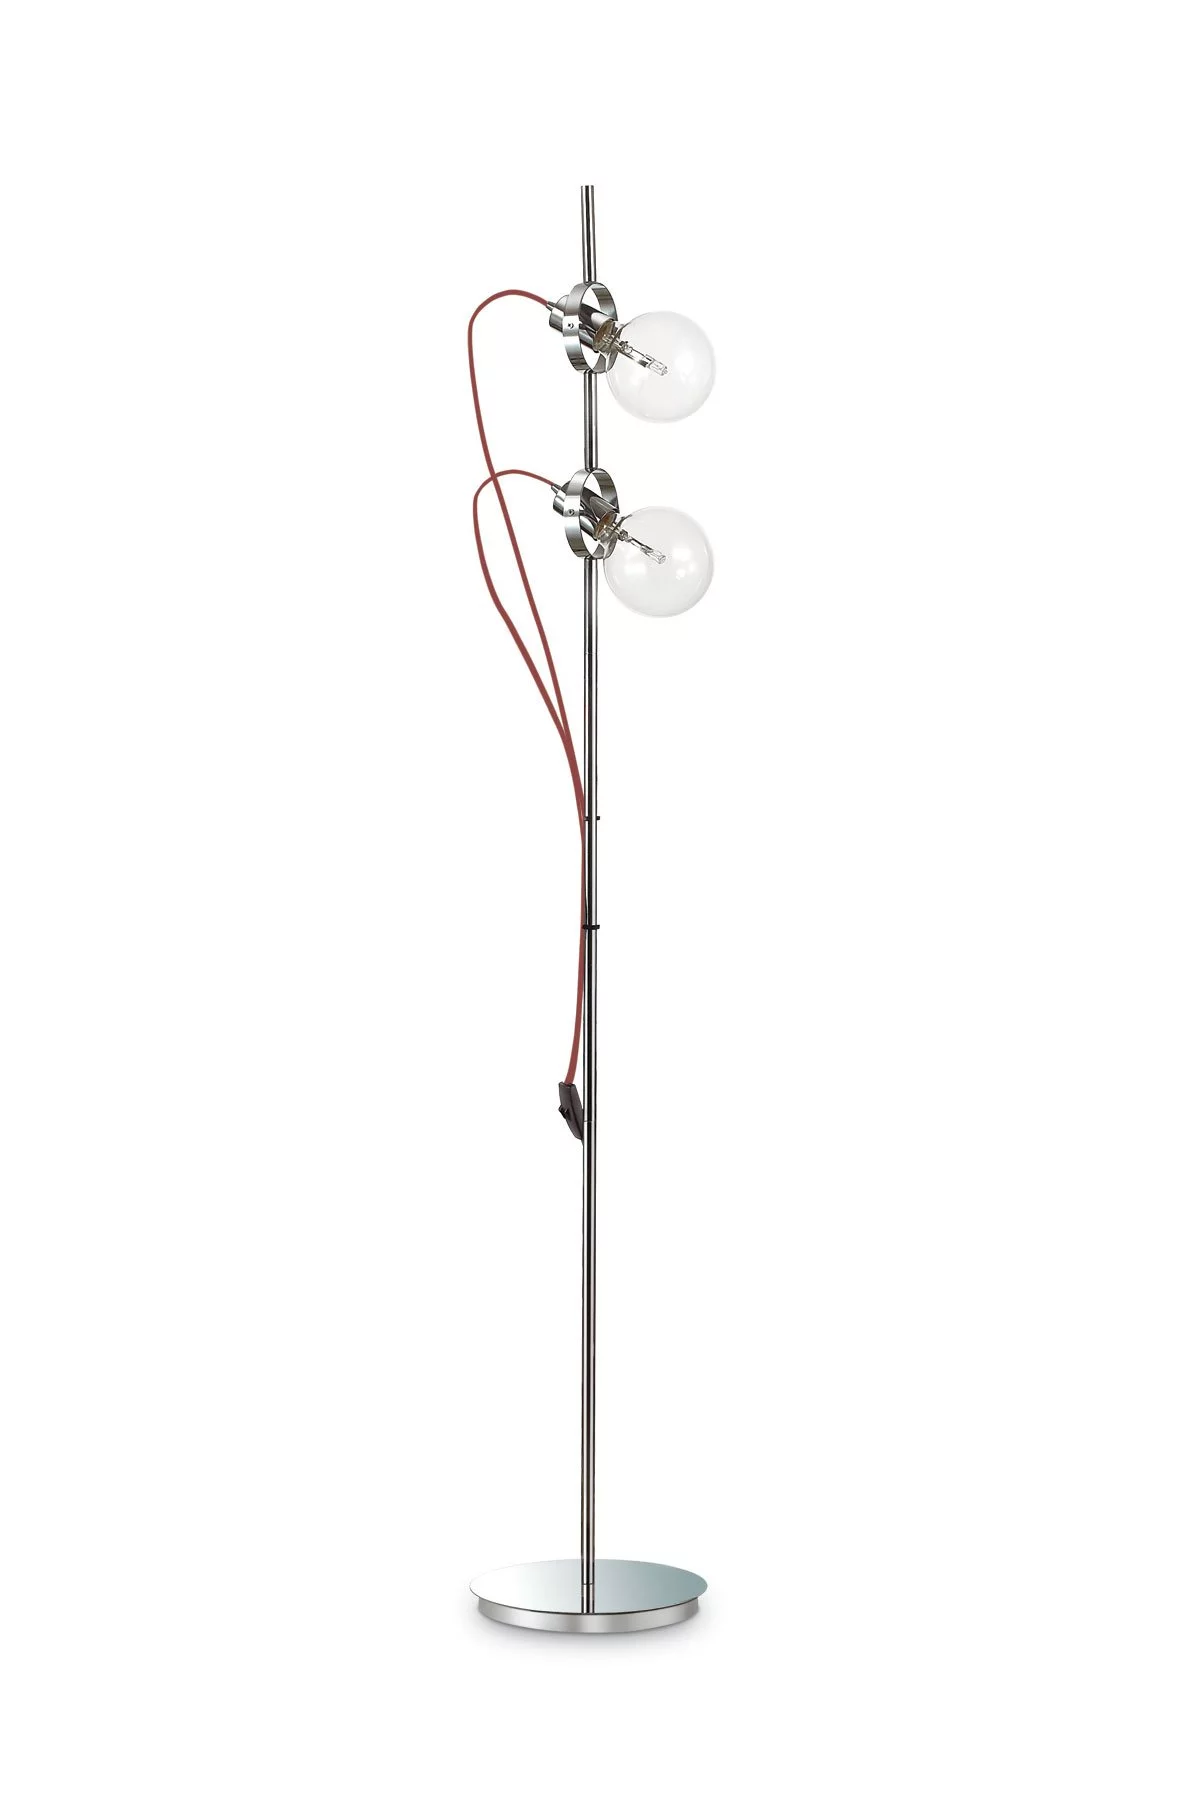   
                        Торшер IDEAL LUX  (Италия) 94229    
                         в стиле Хай-тек.  
                        Тип источника света: светодиодная лампа, сменная.                                                                                                  фото 1